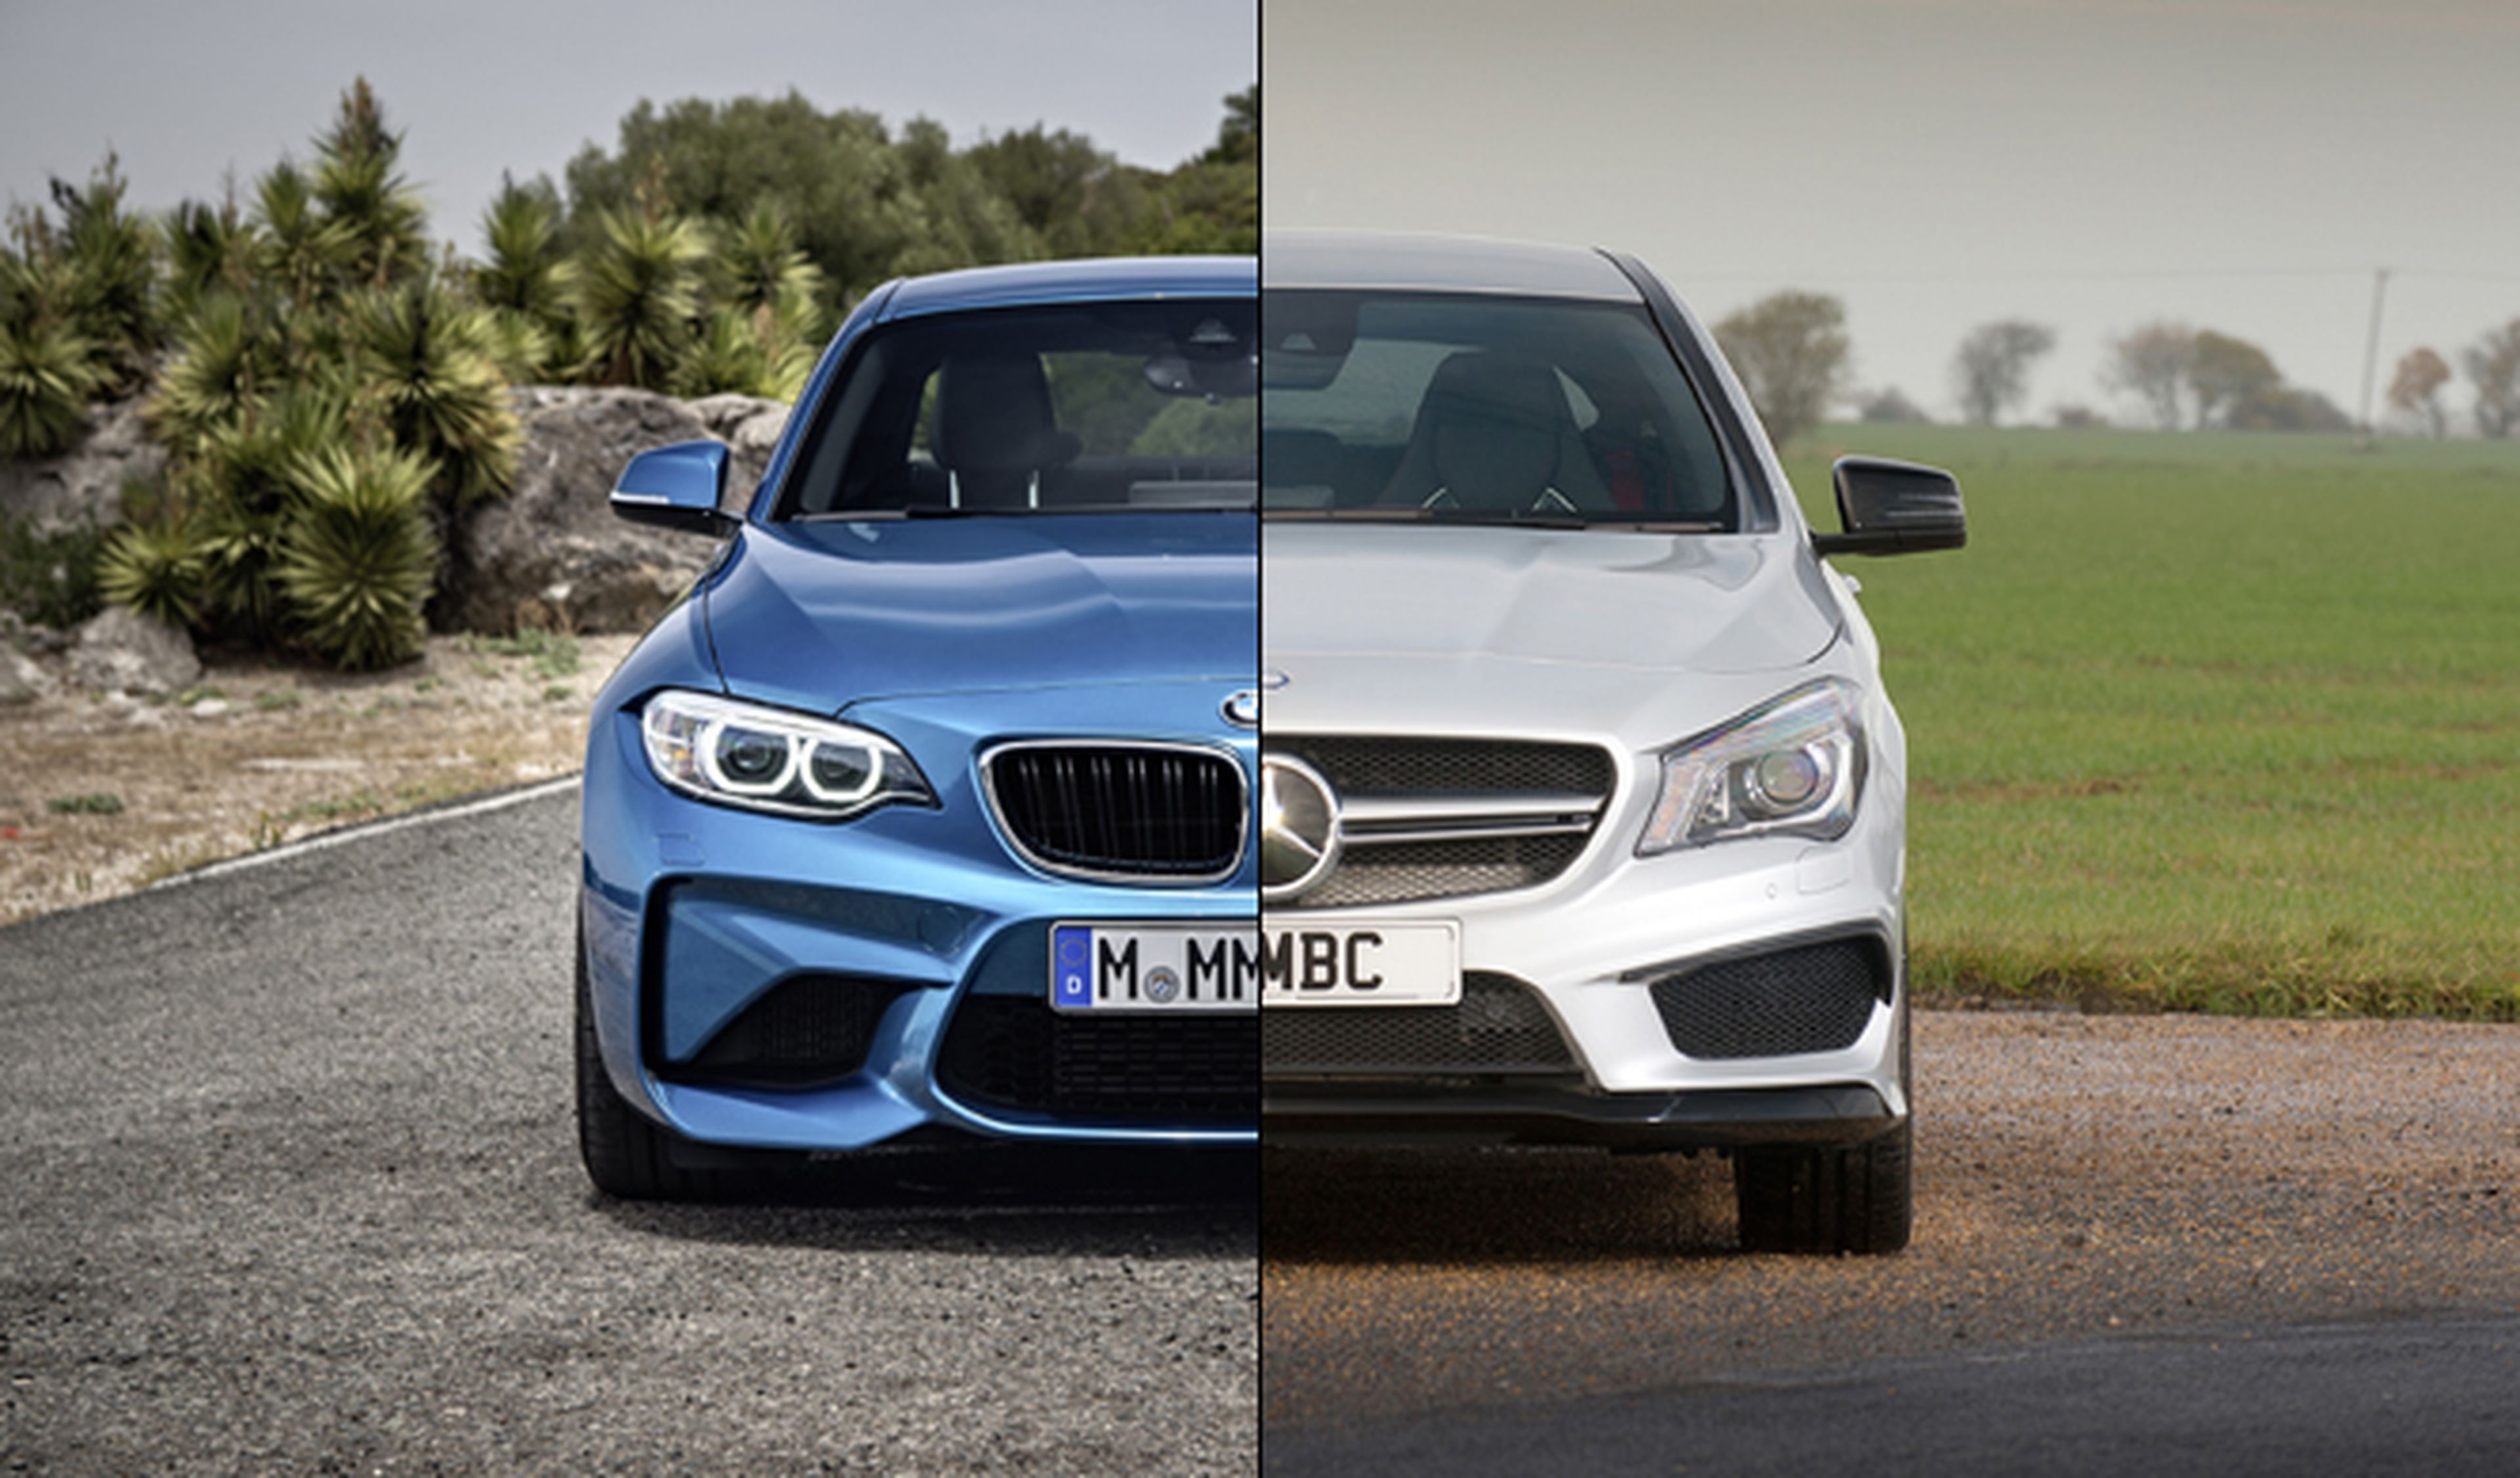 Vídeo: BMW M2 vs Mercedes-AMG CLA 45, ¿cuál es más rápido?